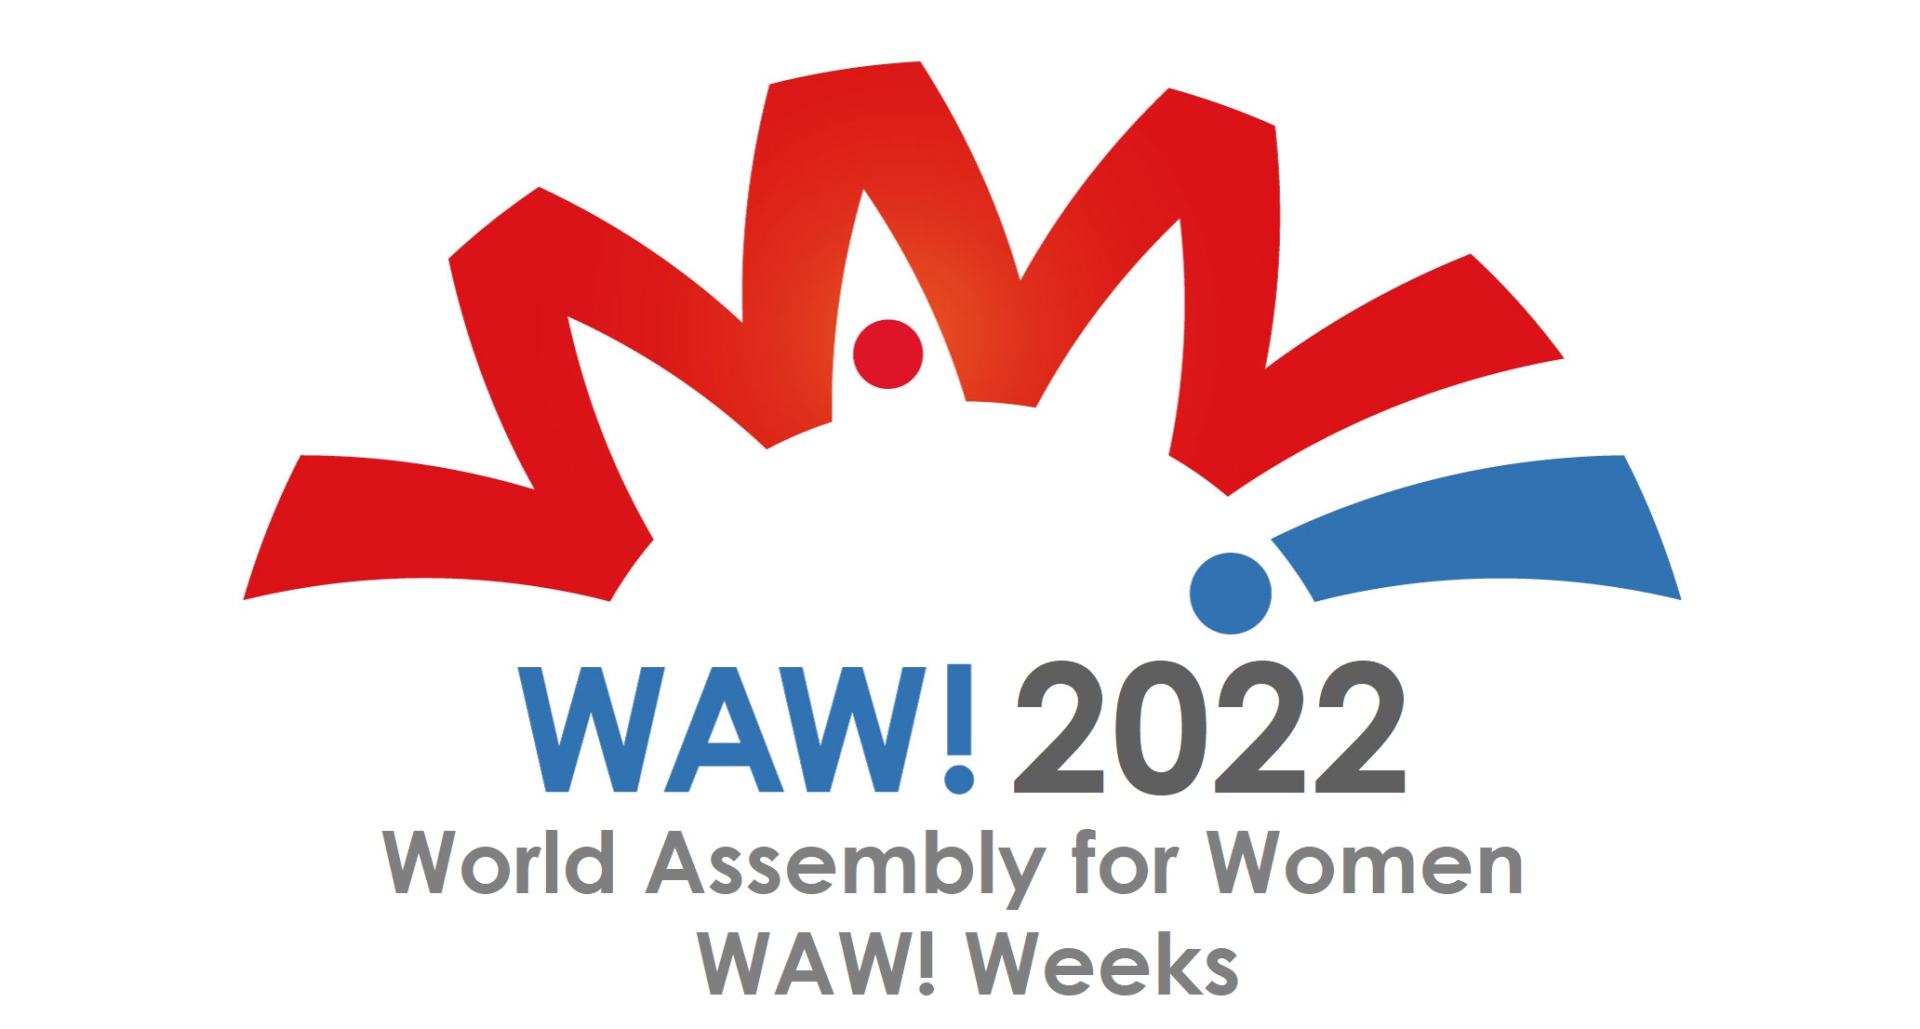 WAW! logo